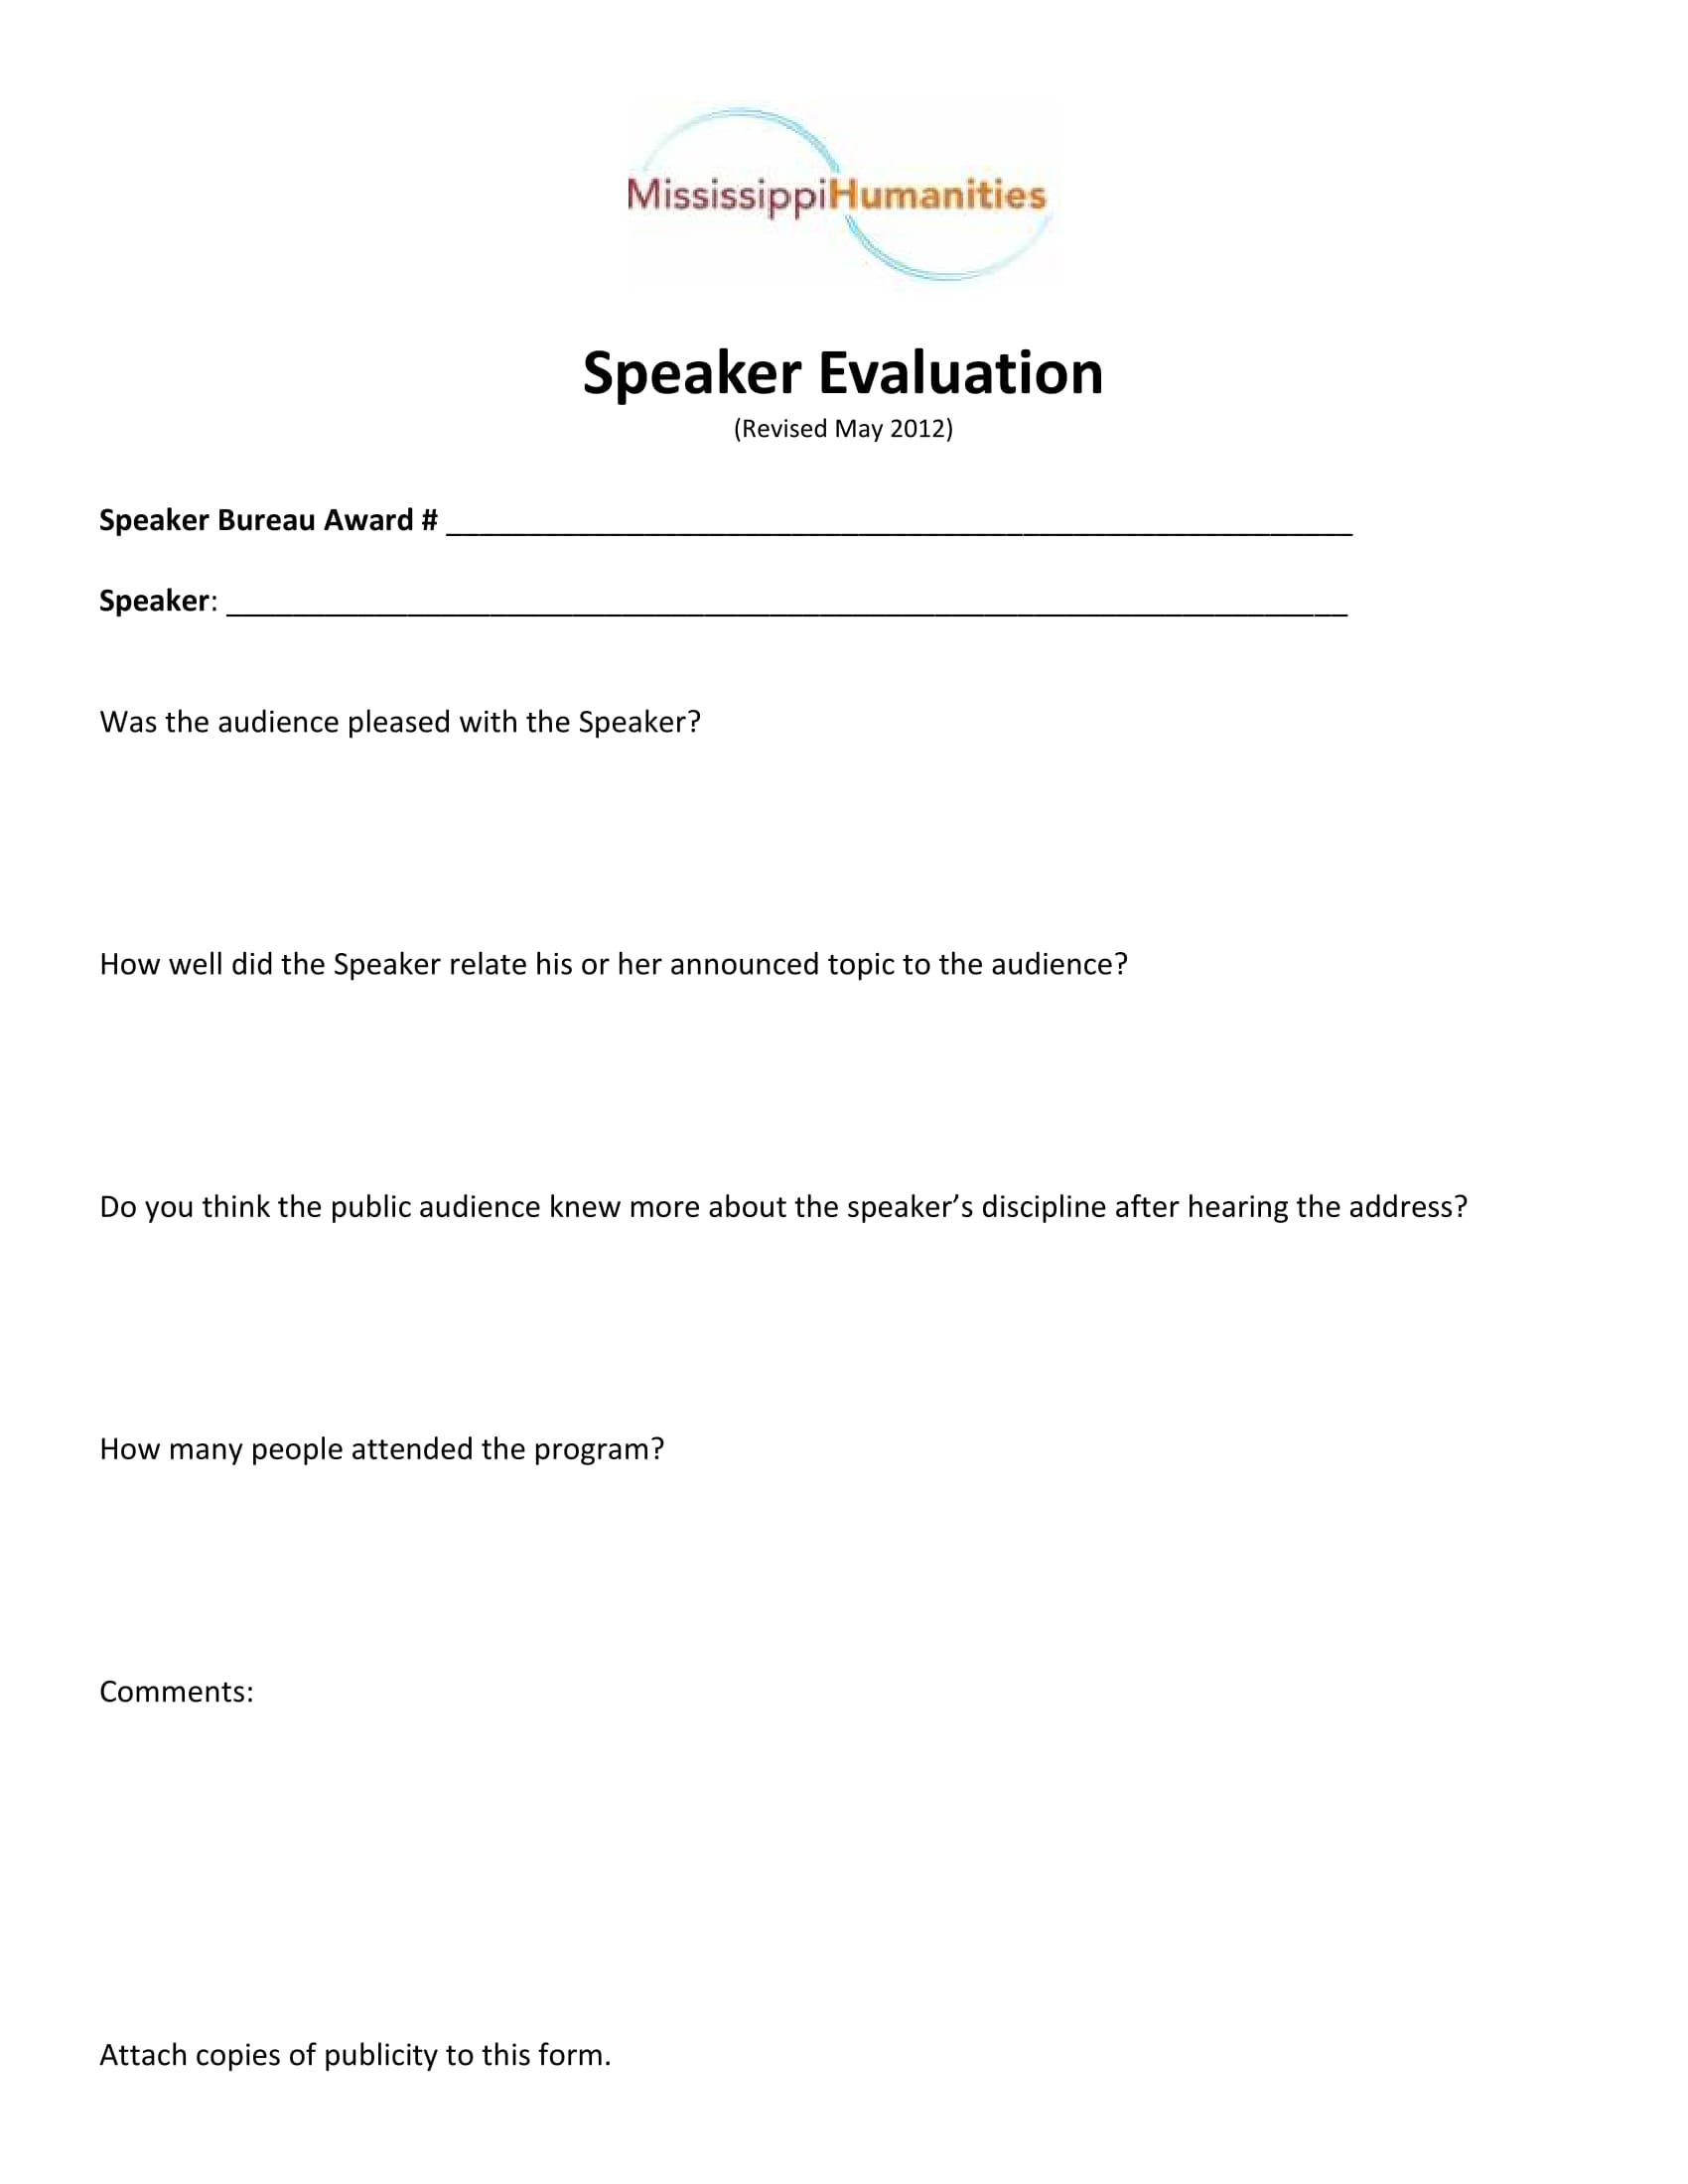 general speaker evaluation form 1